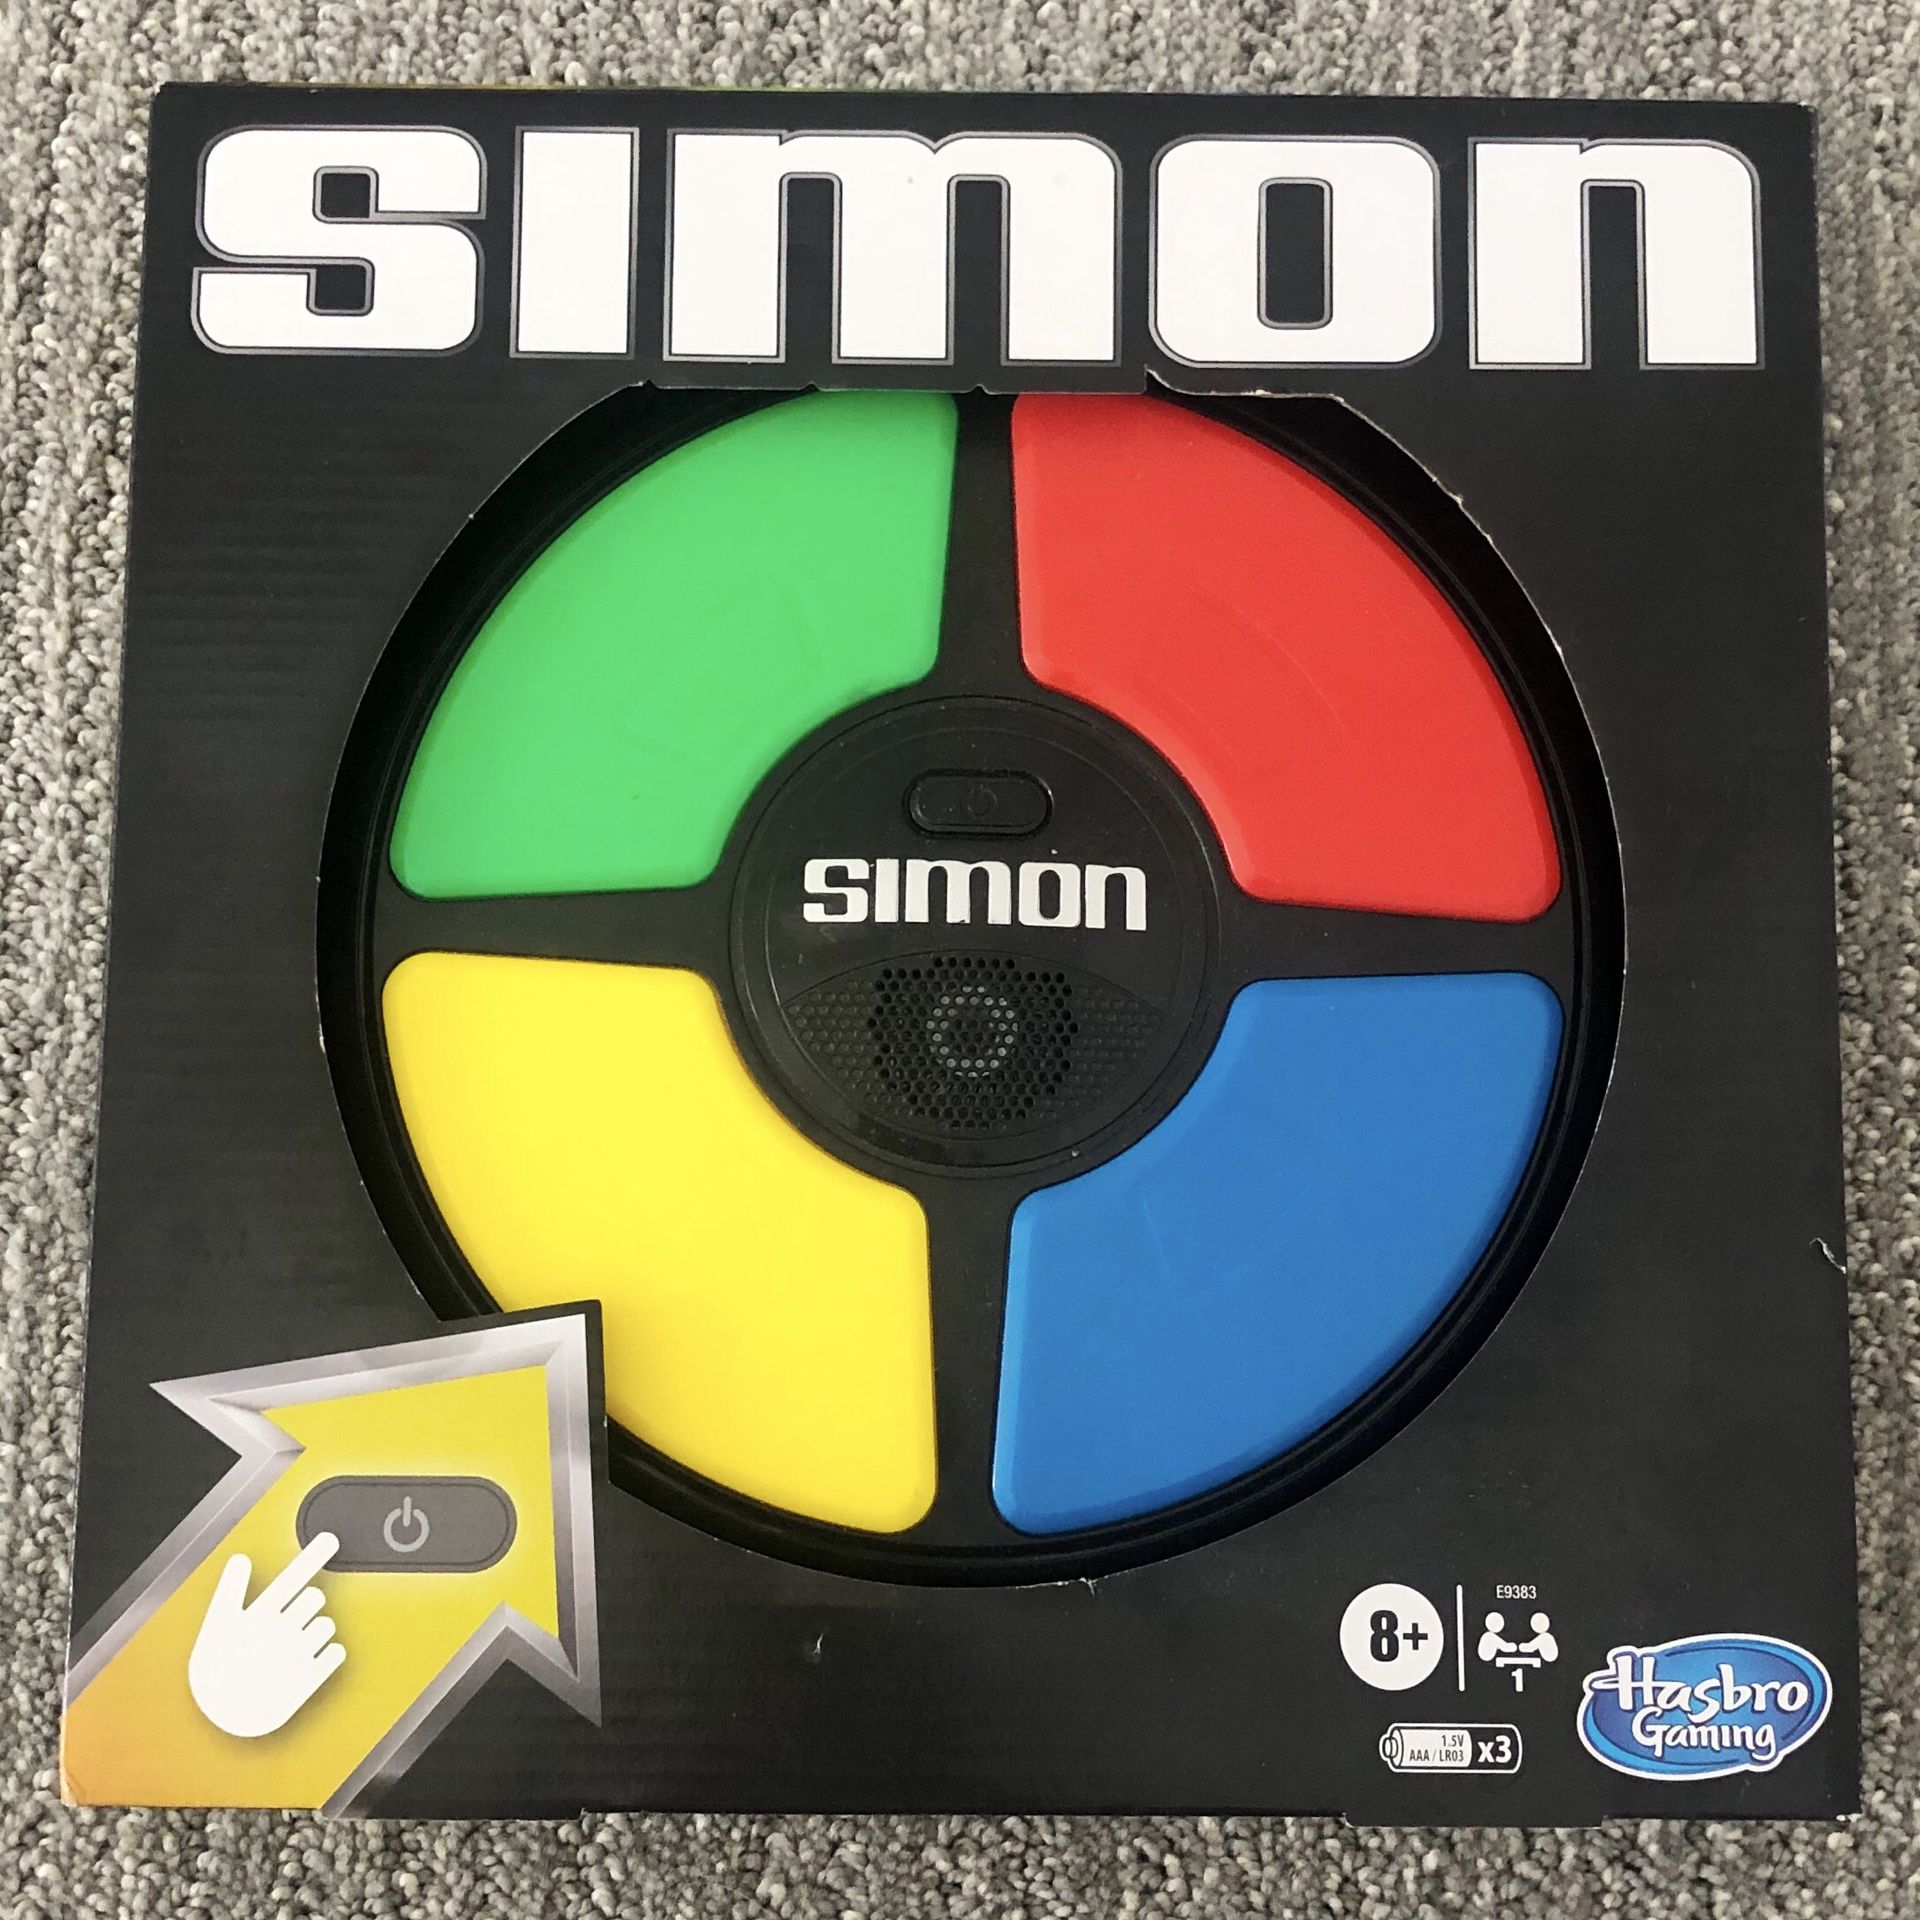 Simon Says Game